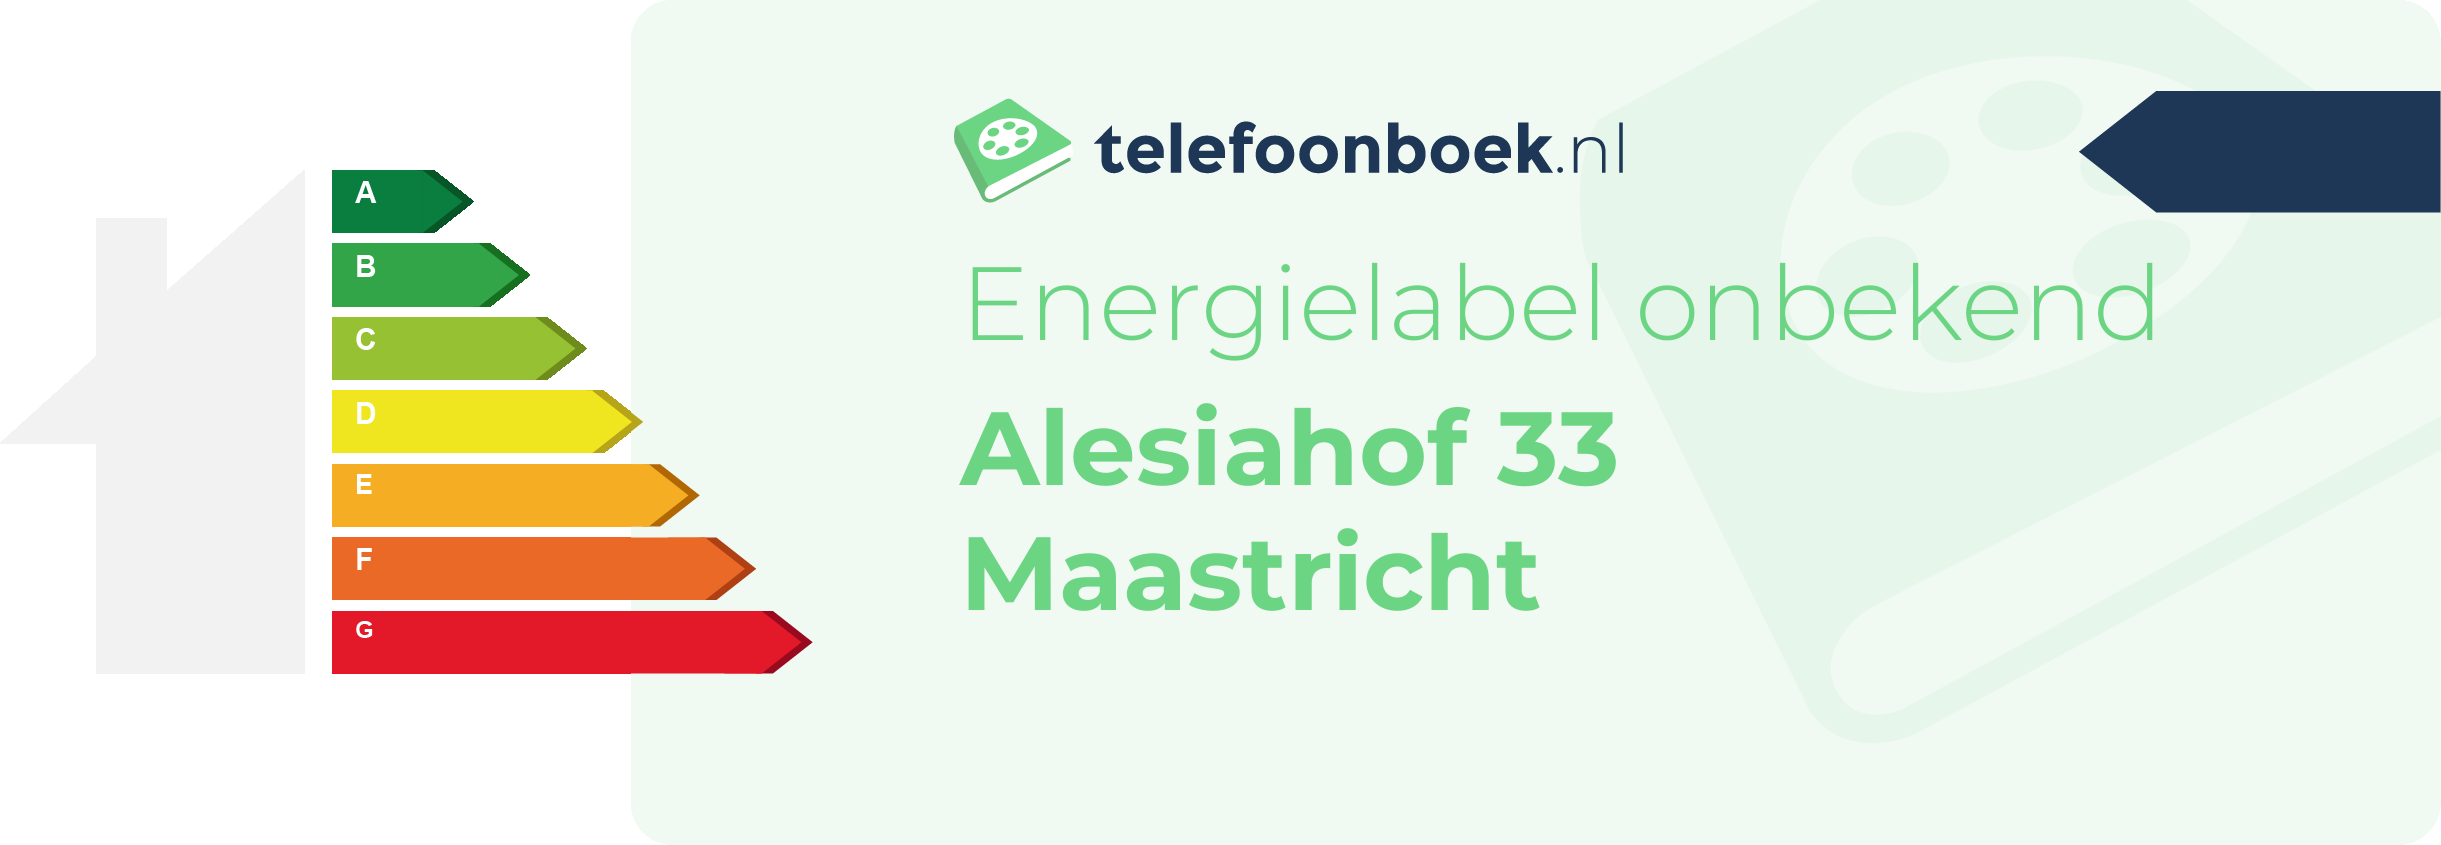 Energielabel Alesiahof 33 Maastricht